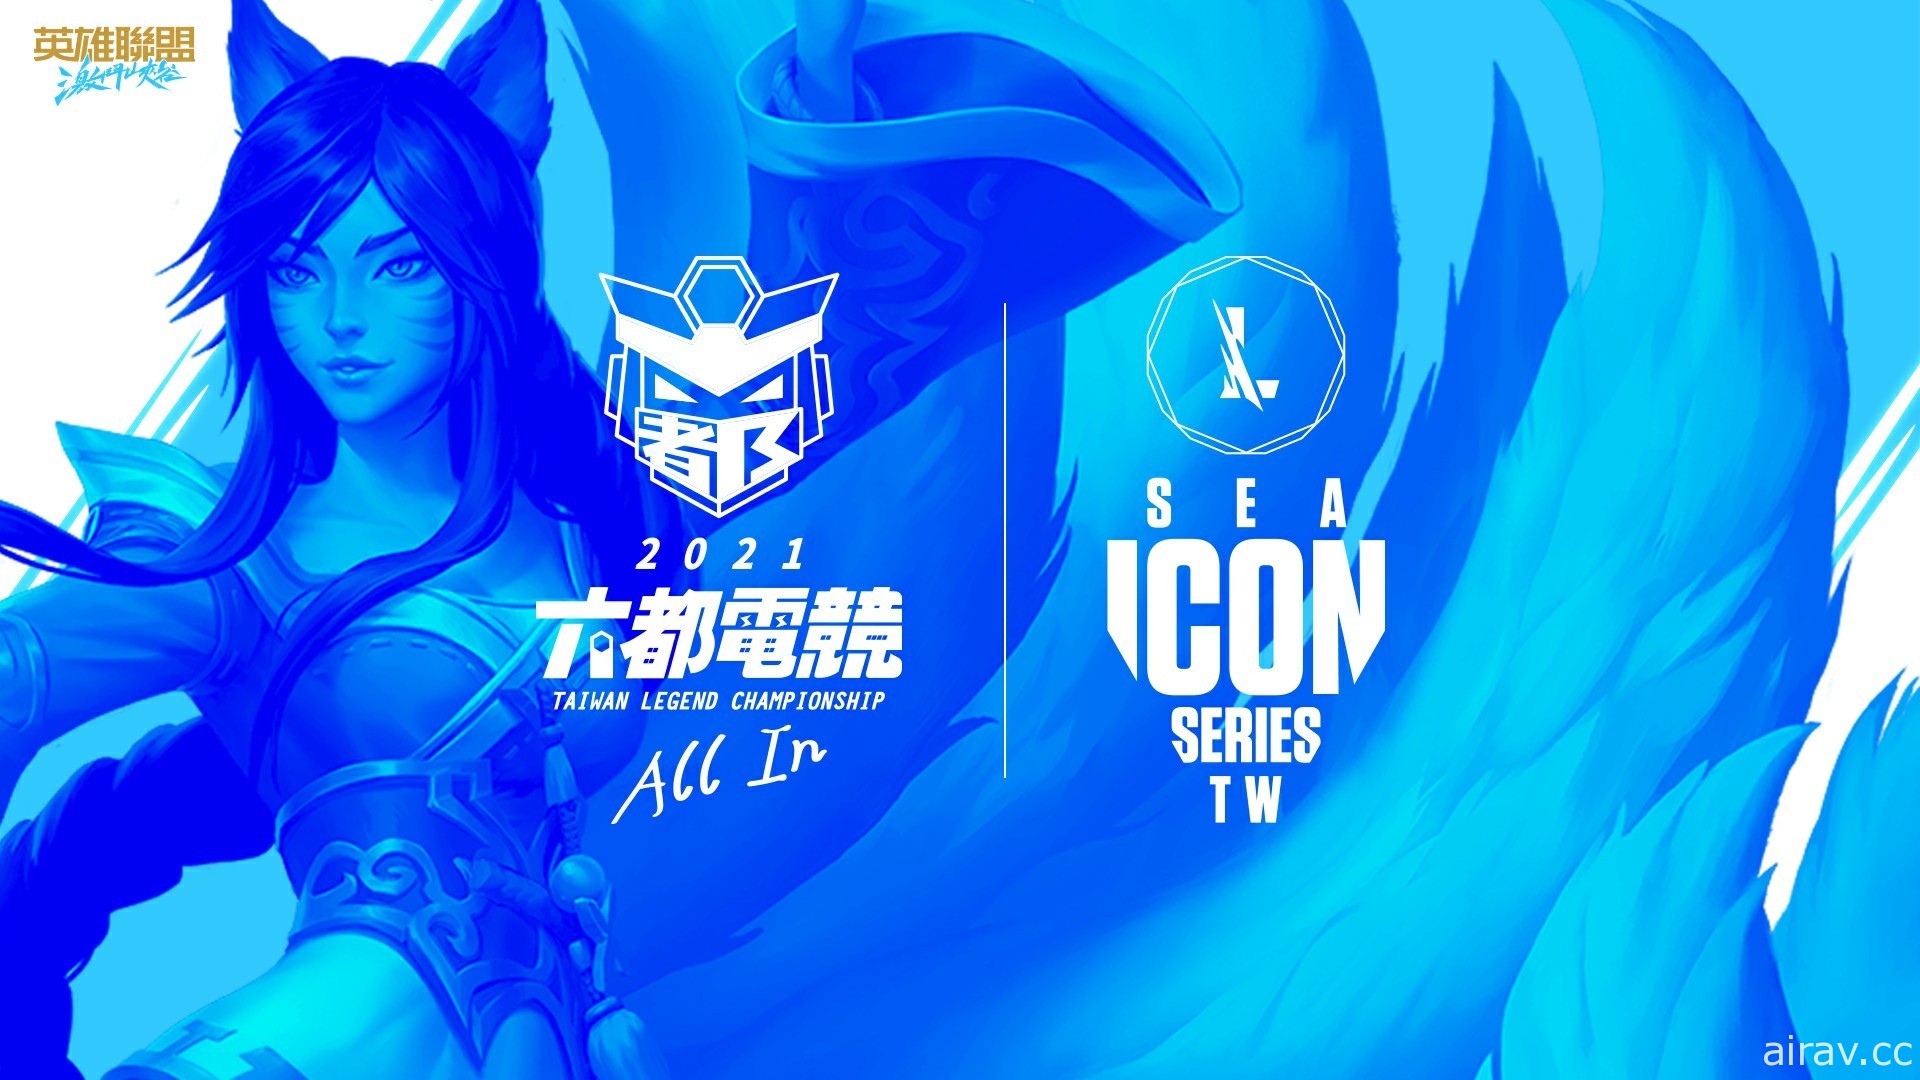 《英雄联盟：激斗峡谷》2021 六都电竞争霸战将与“东南亚 ICON SERIES 台湾地区赛”合并